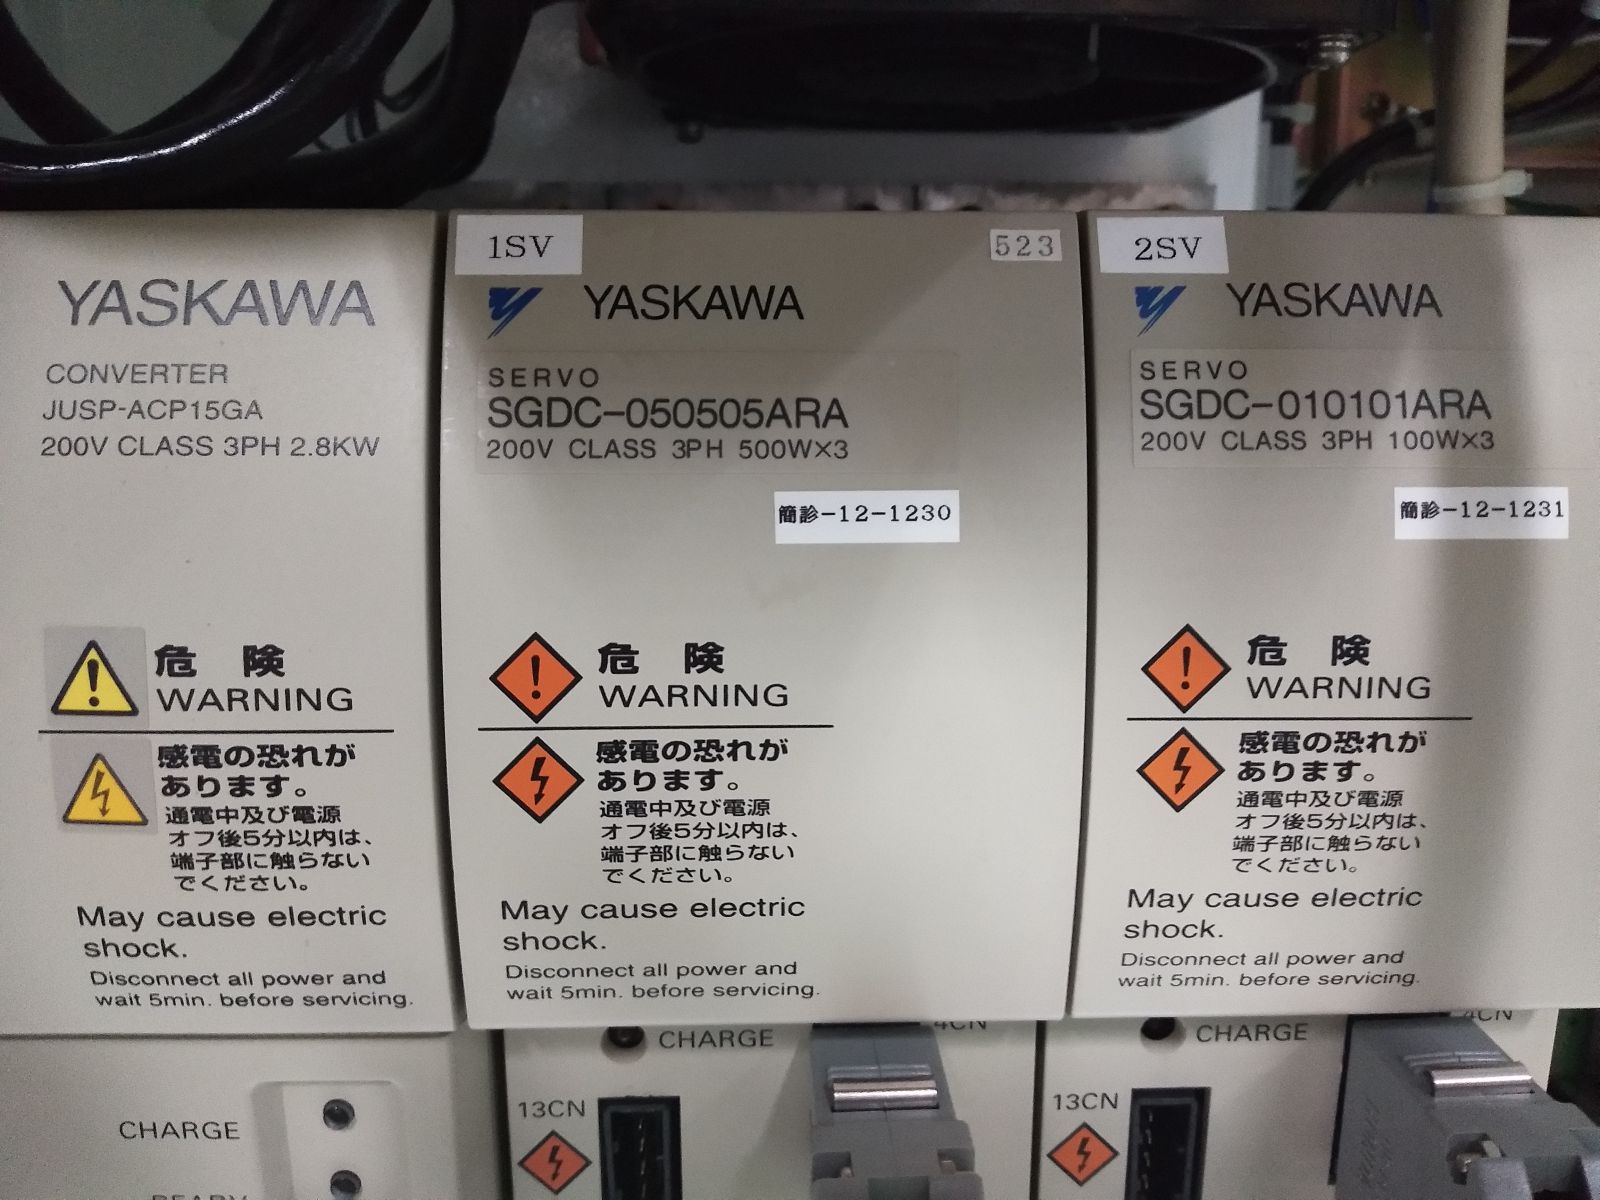 YASKAWA ROBOT MOTOMAN YASNAC MRC II S ERCR-CS8-NA00